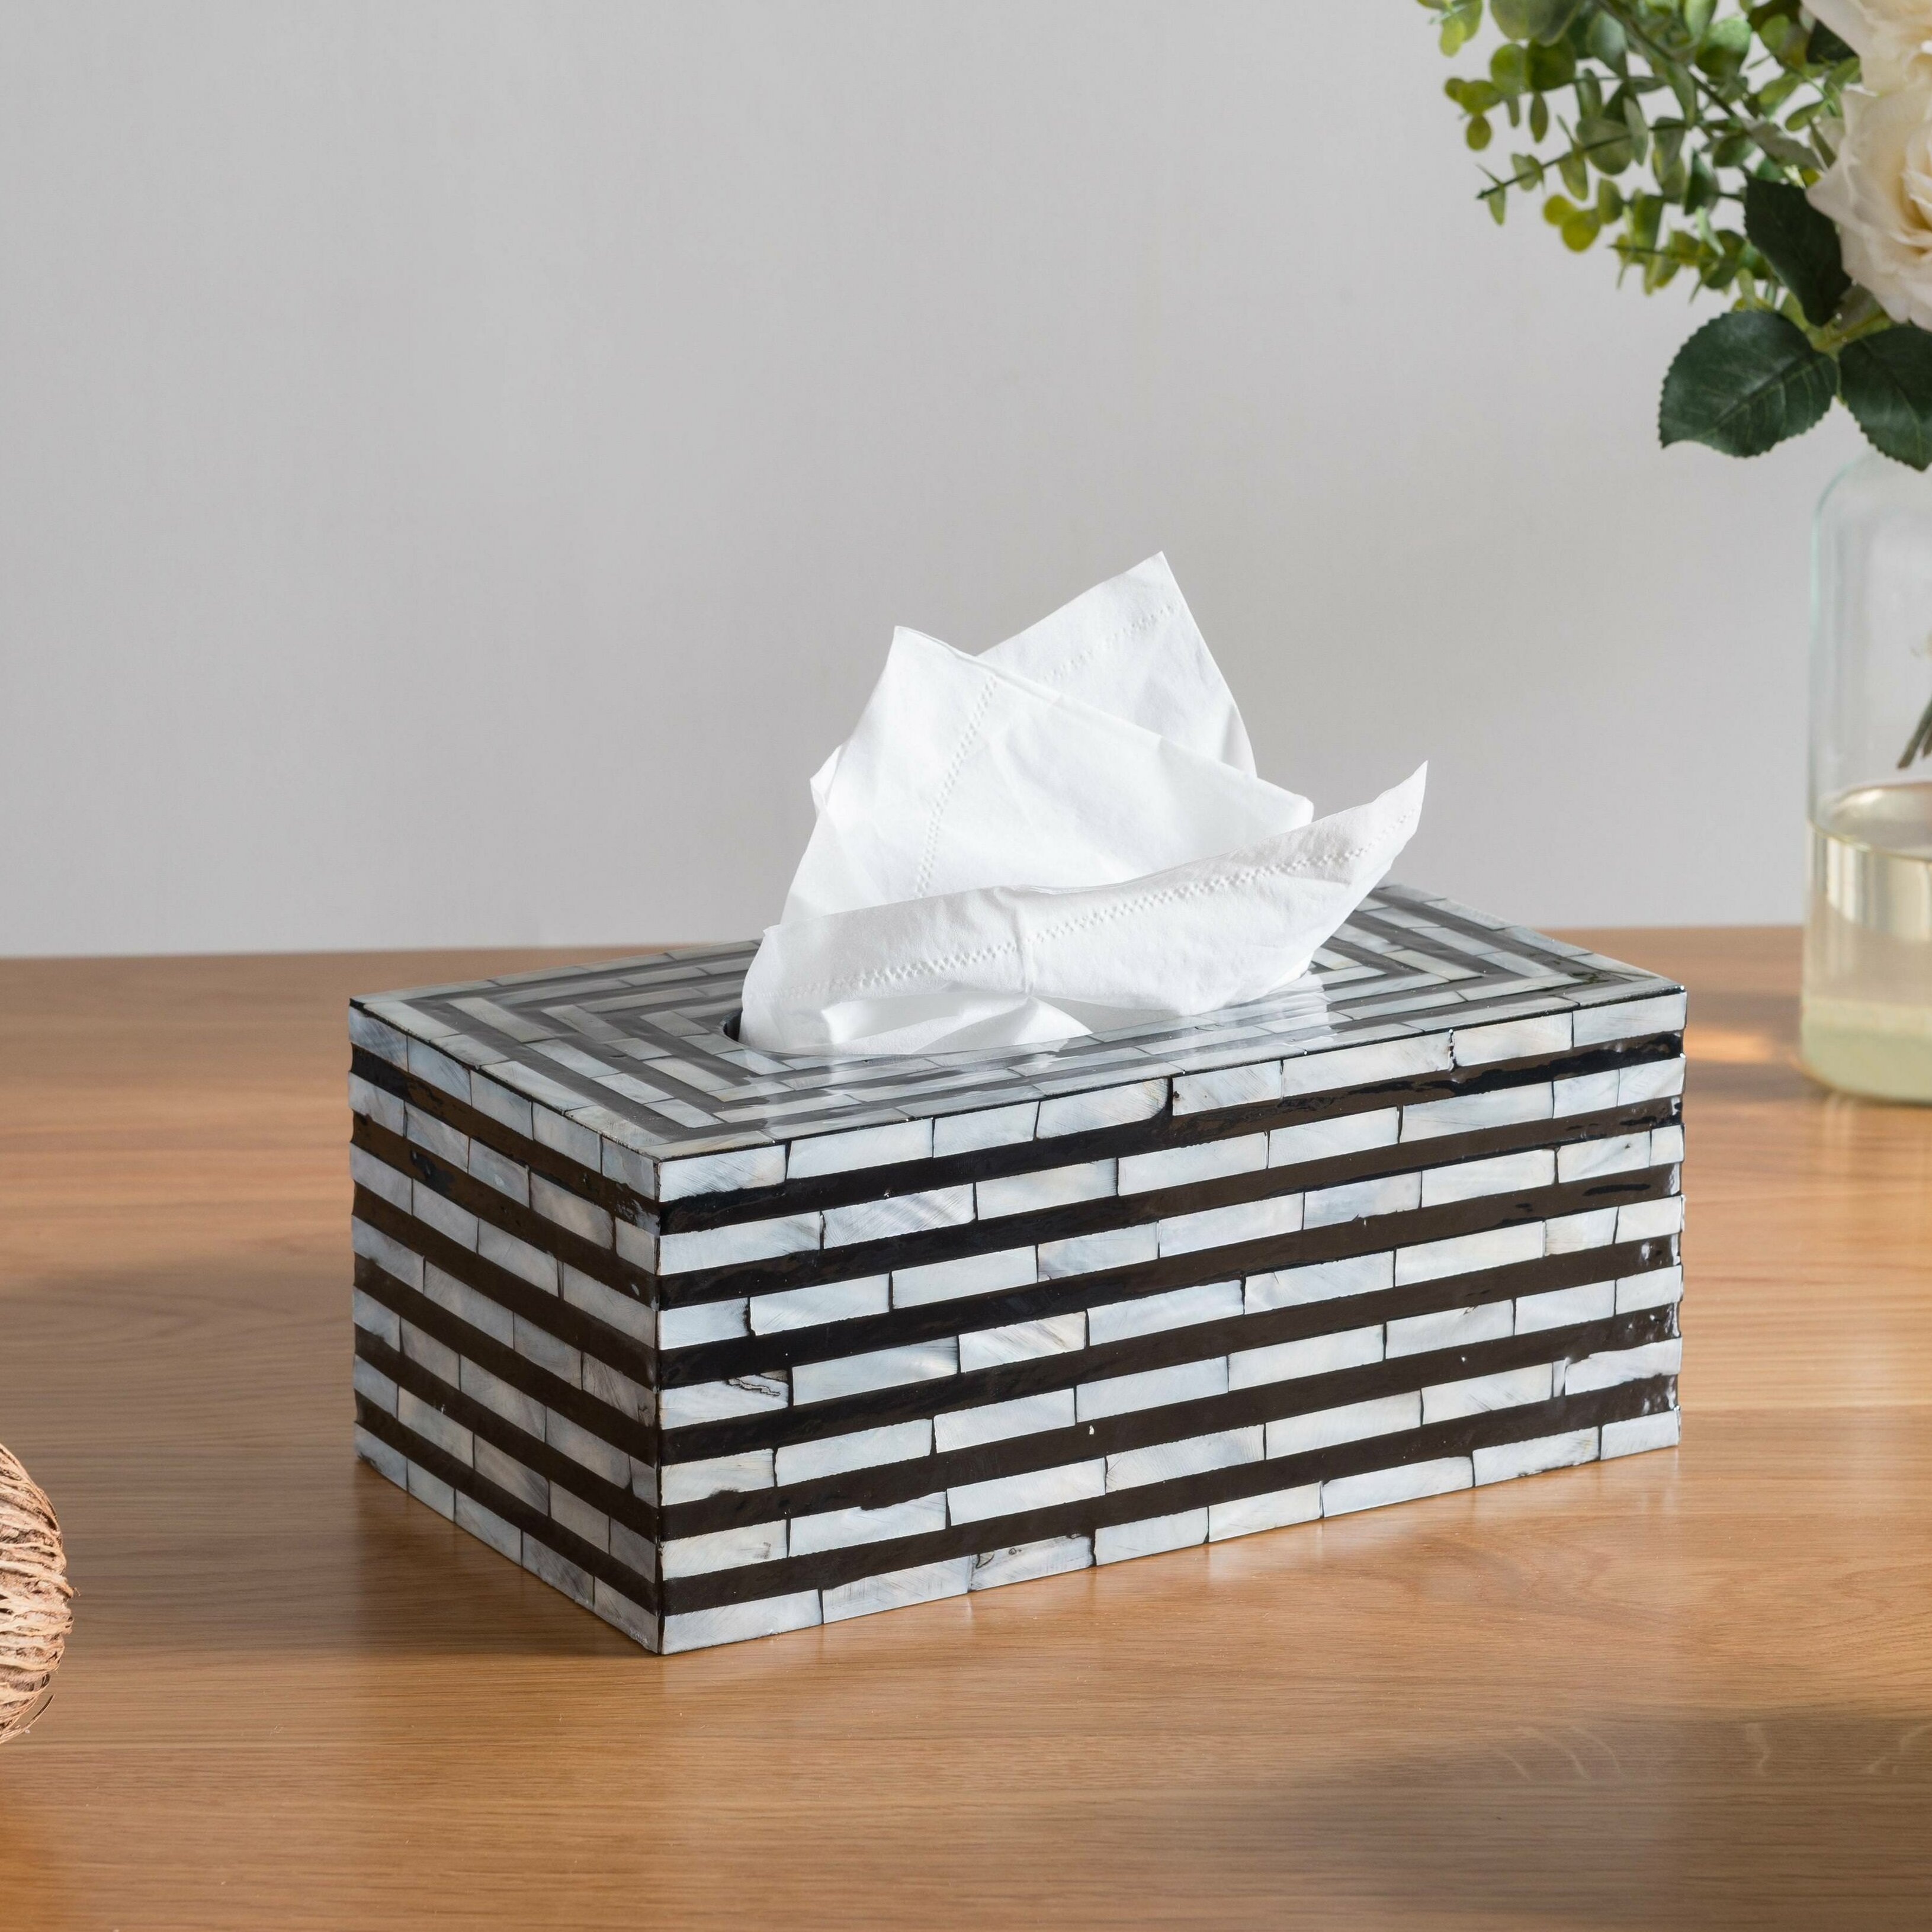 pearl tissue box cover